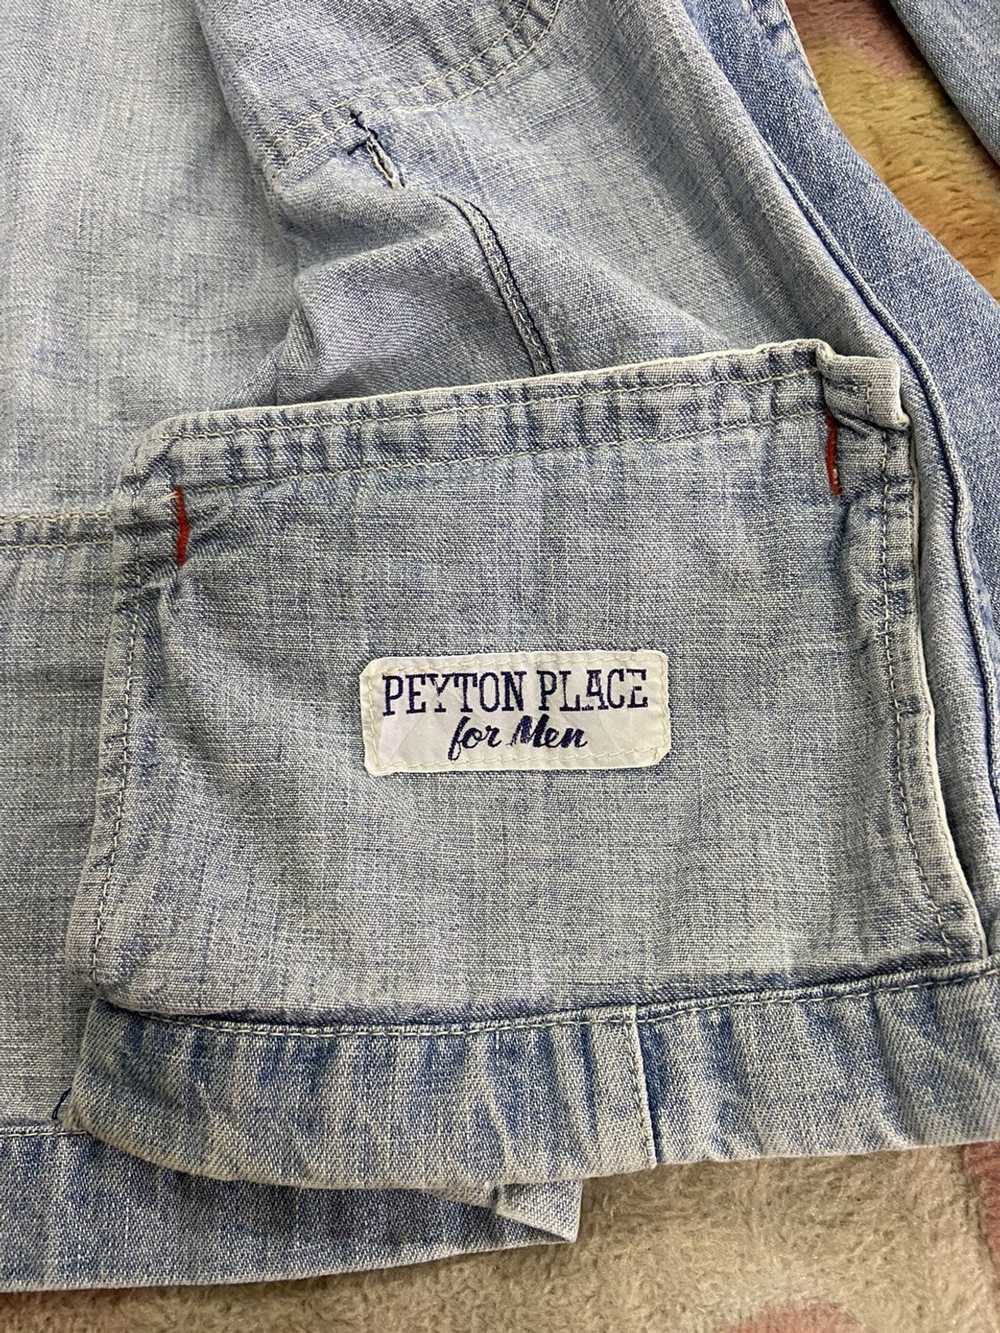 PPFM Peyton Place For Men - image 9